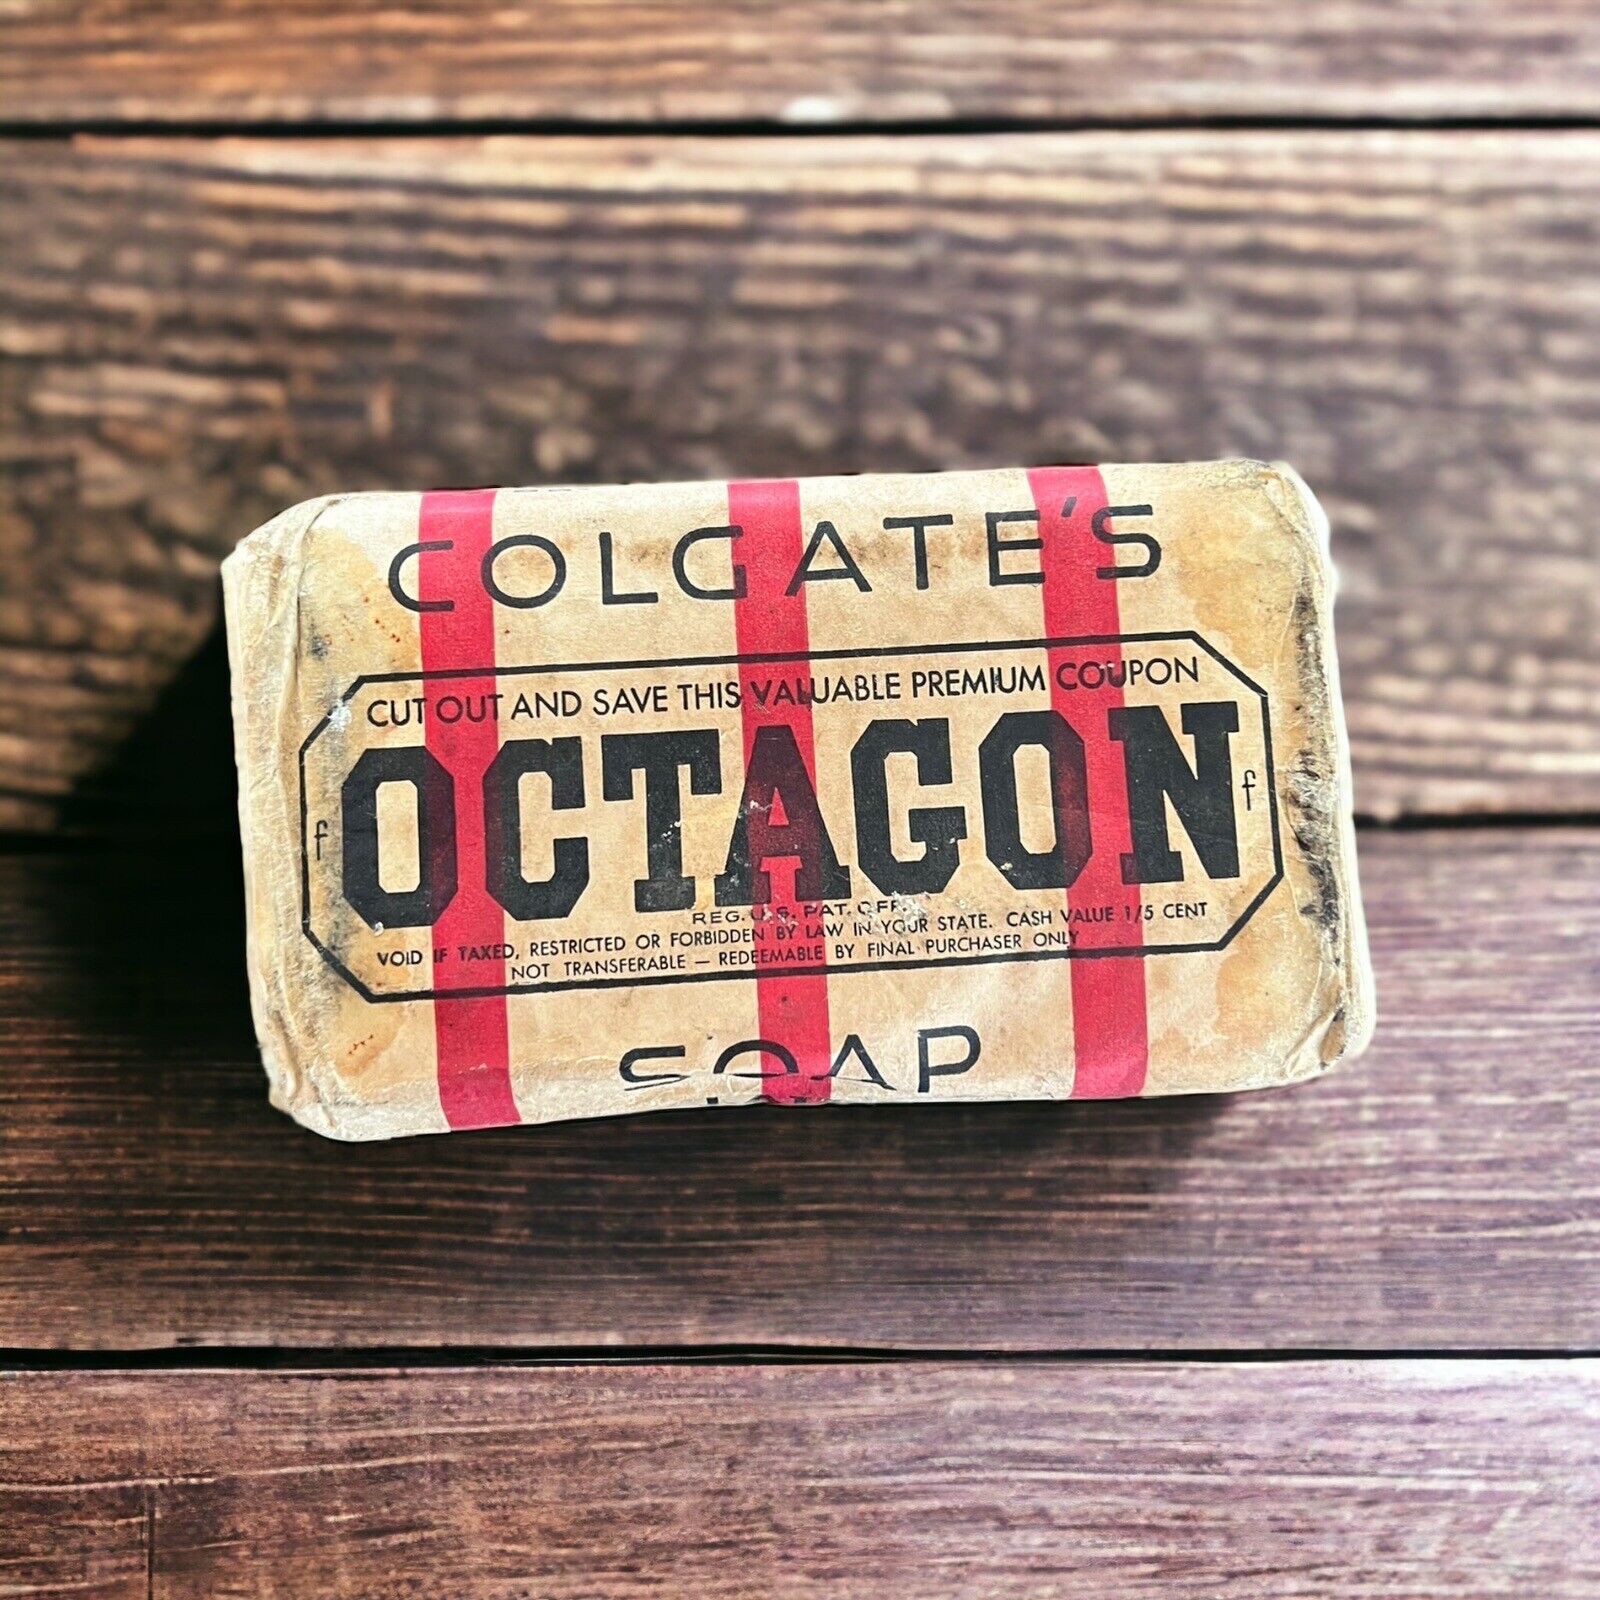 Colgates Octagon Laundry Soap Antique Vintage 